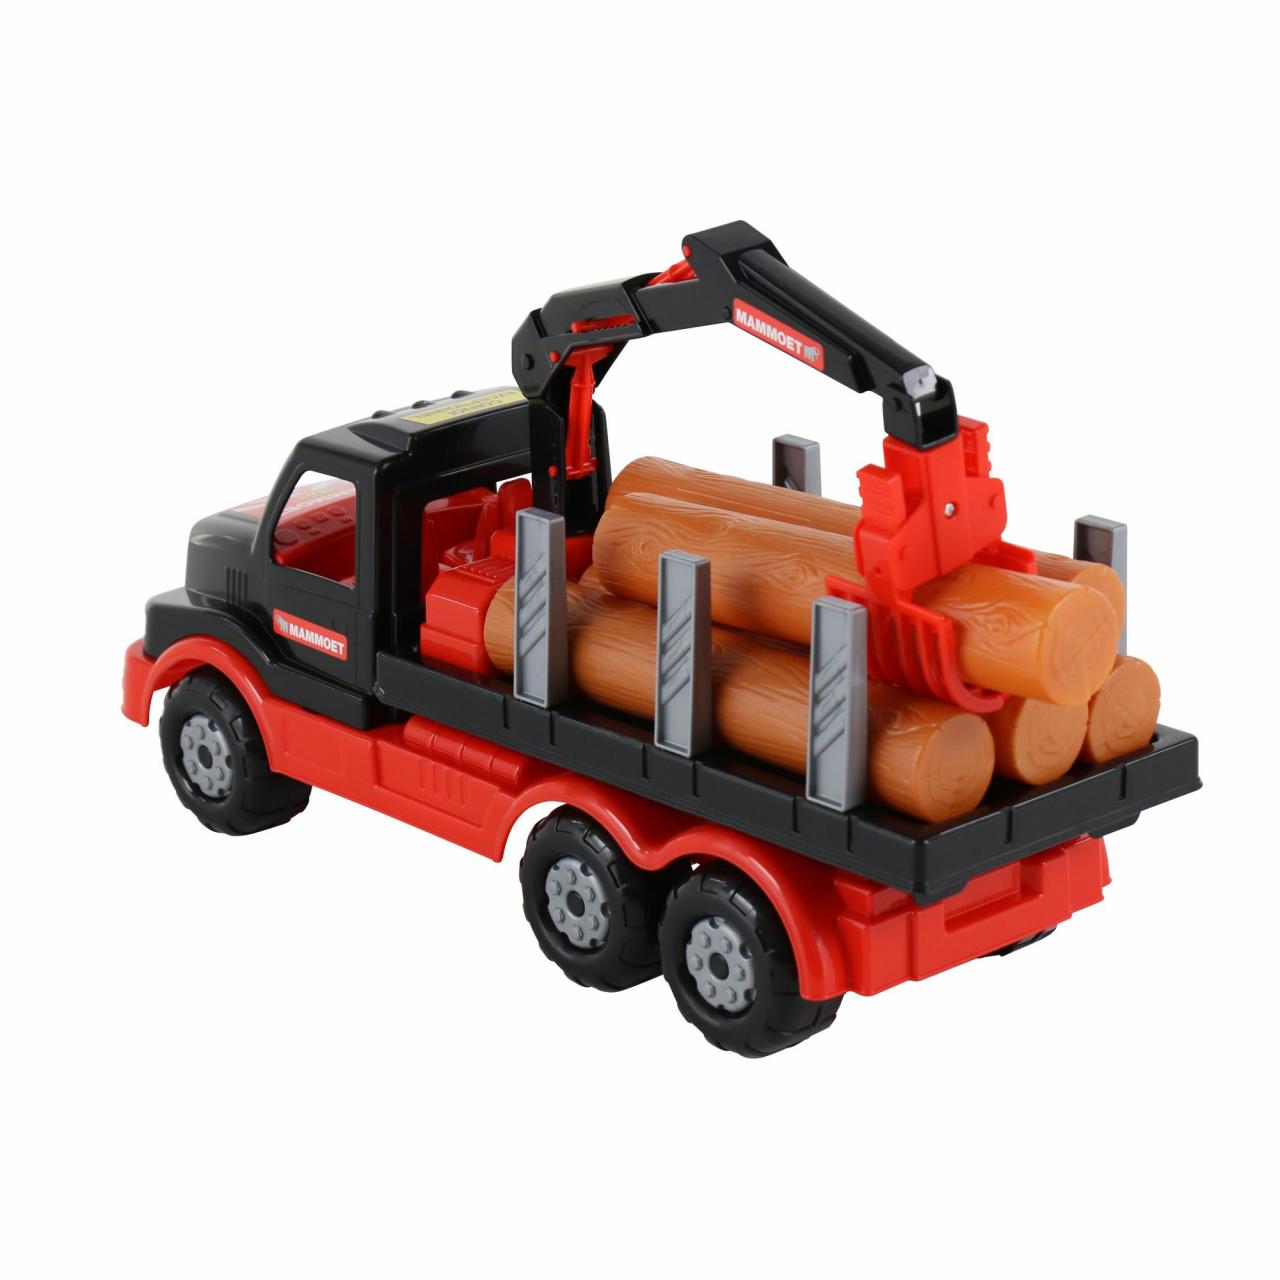 Автомобиль-лесовоз Mammoet Toys Полесье, 68521 